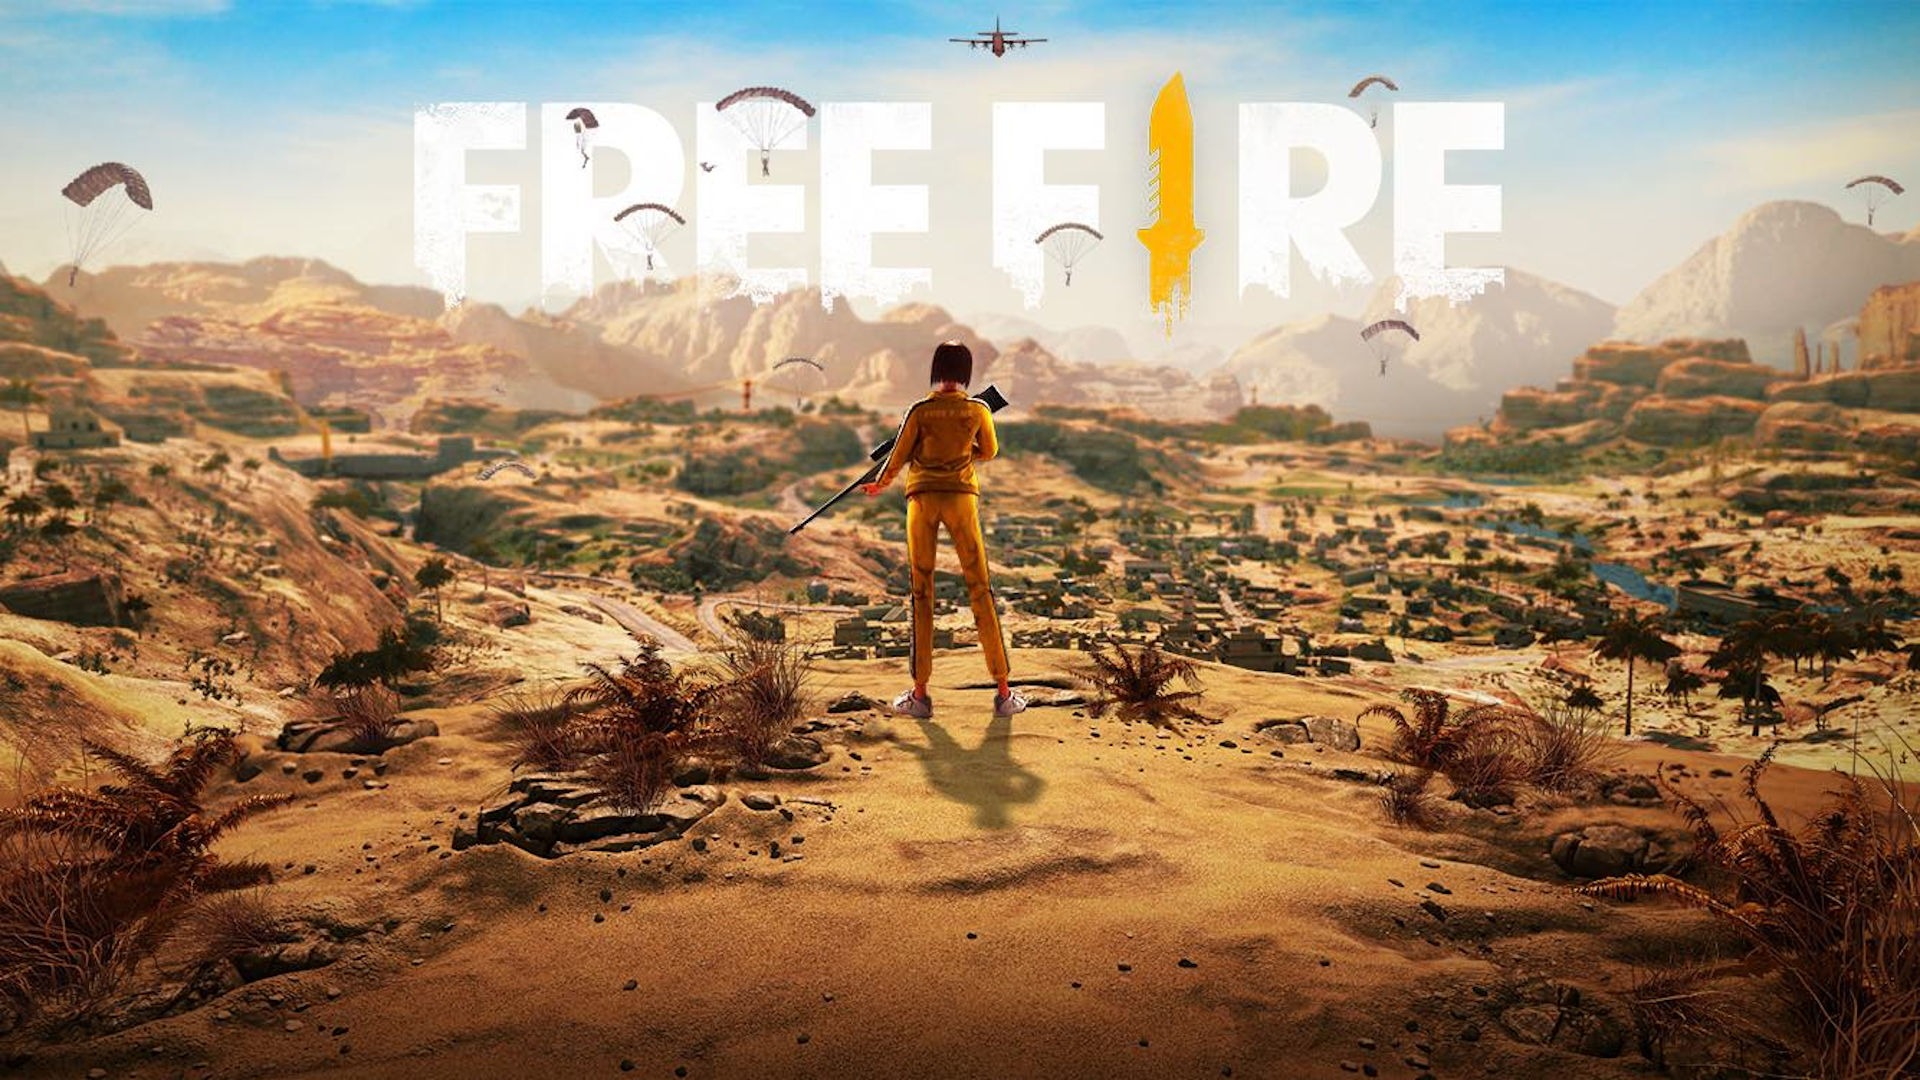 Free Fire MAX vai abrir pré-registro no Android neste domingo (29) | Jogos